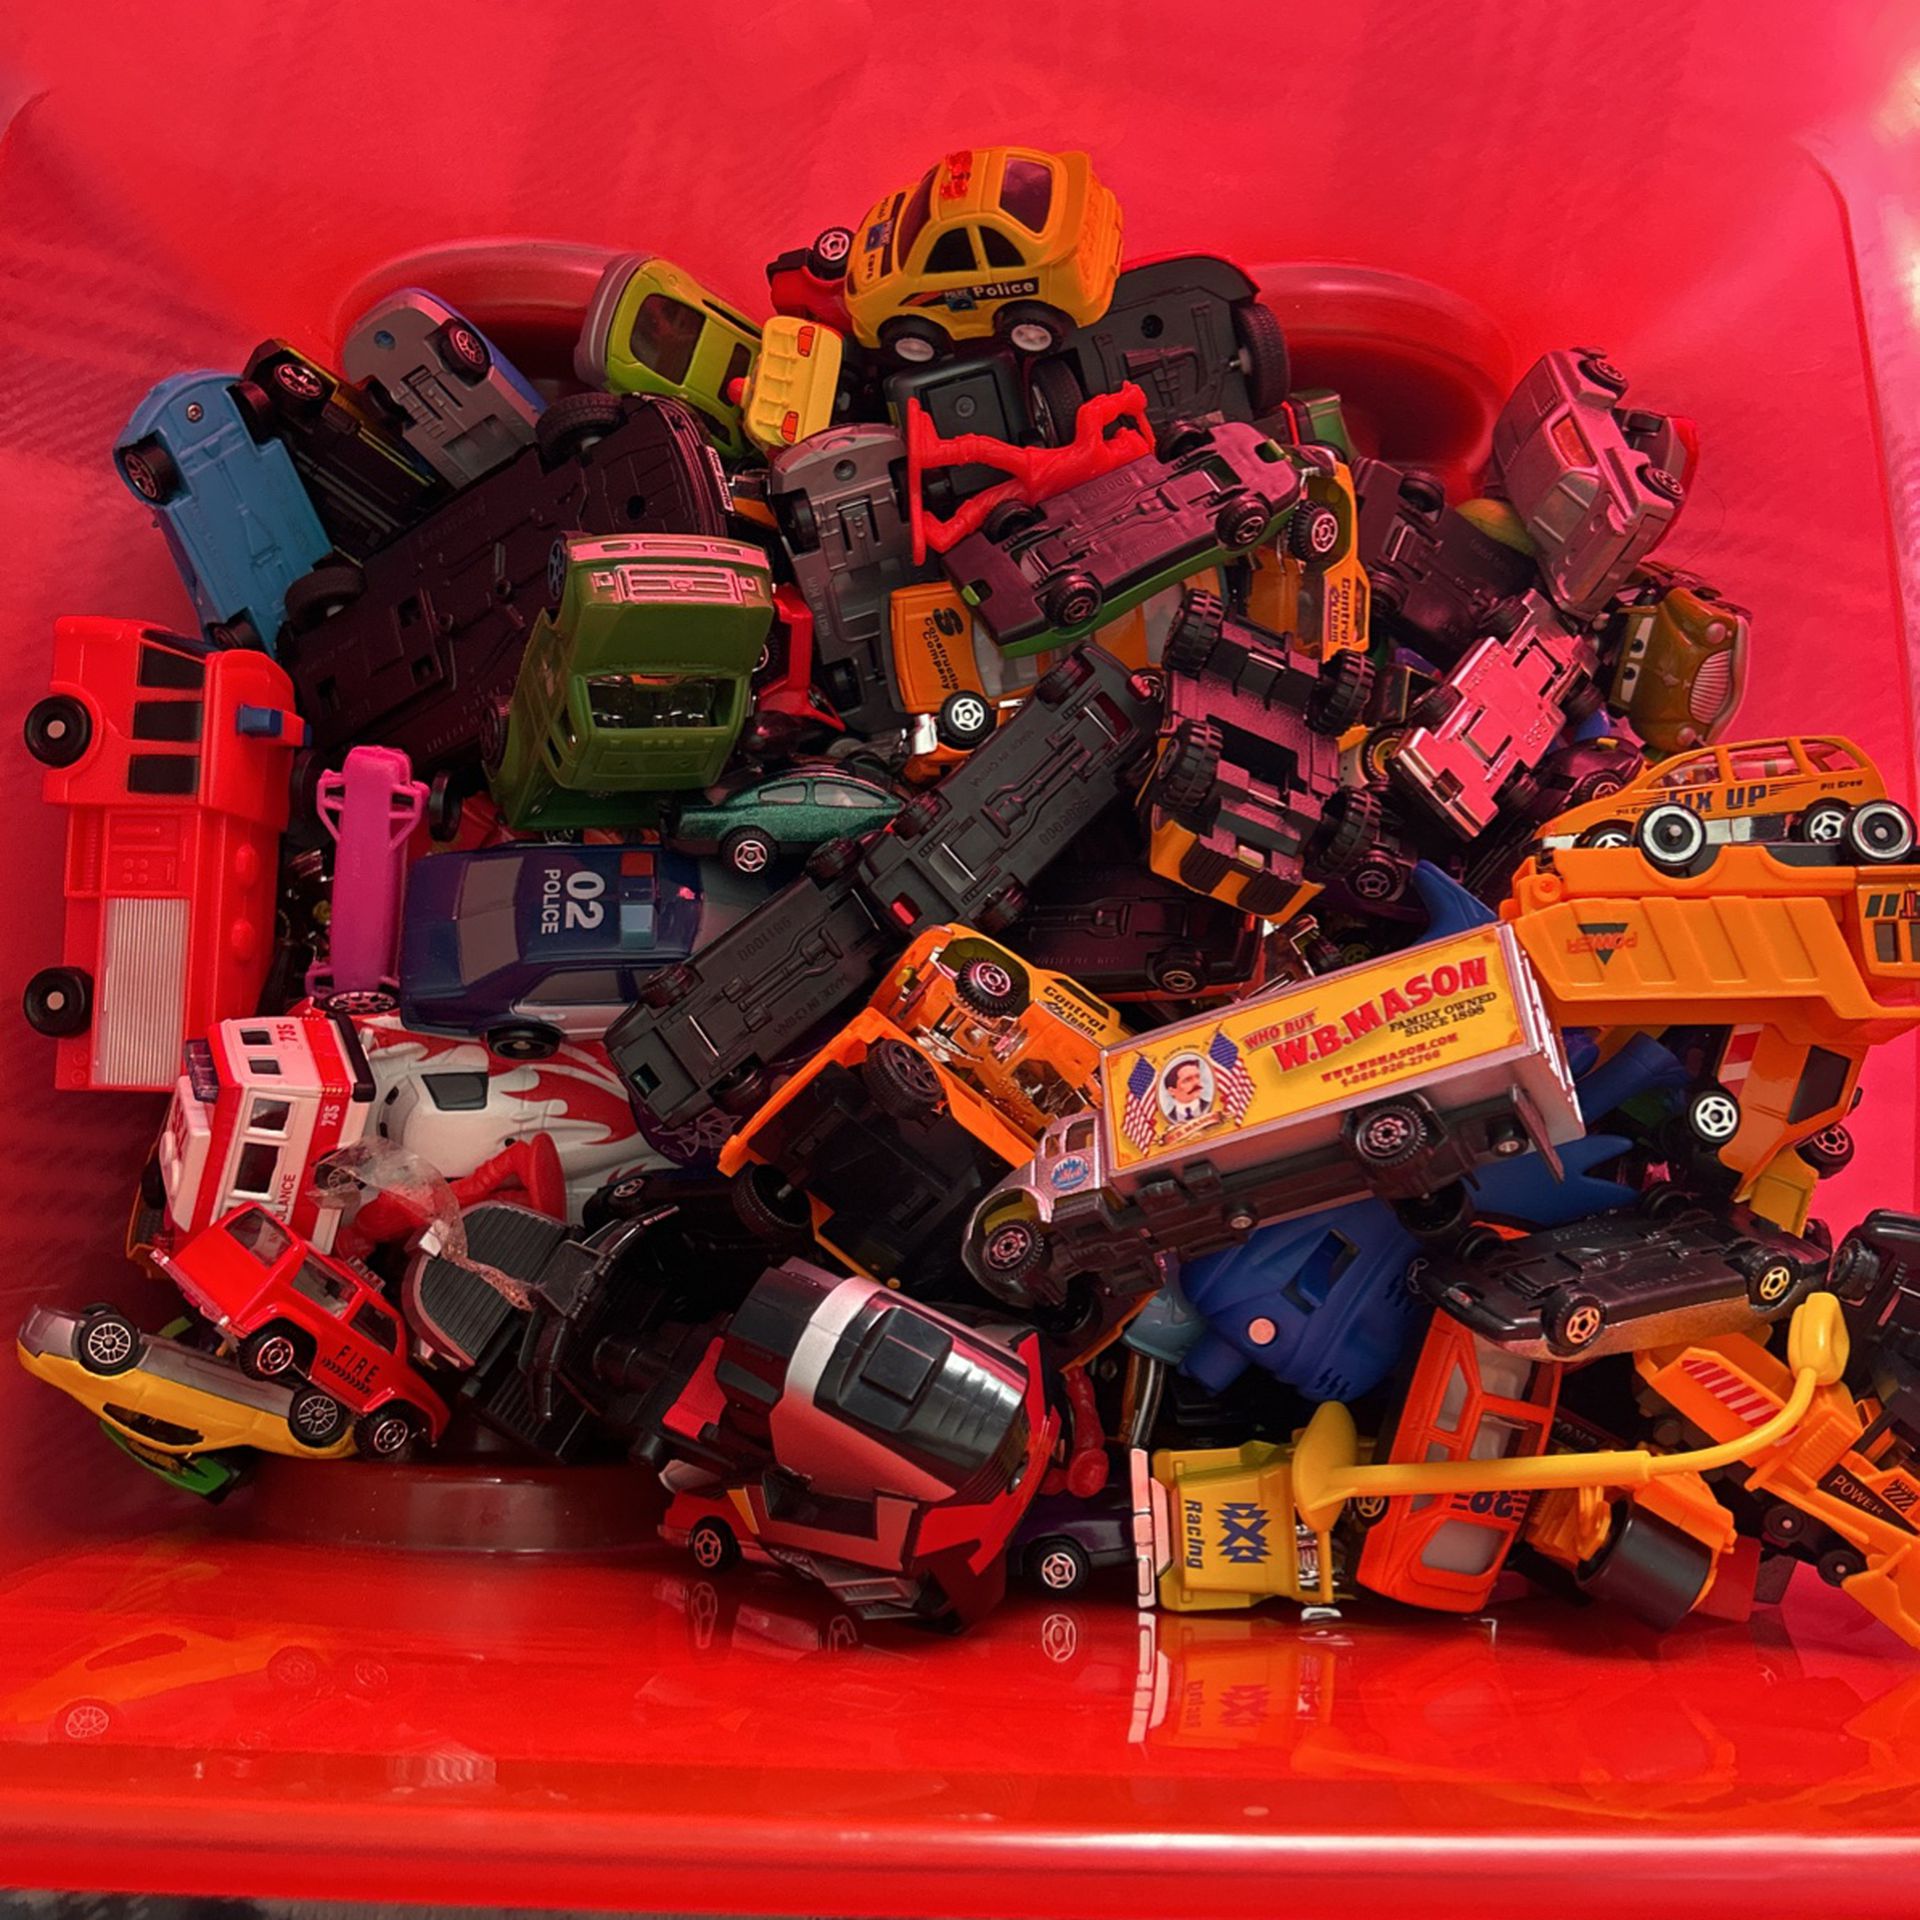 Bin of toy cars